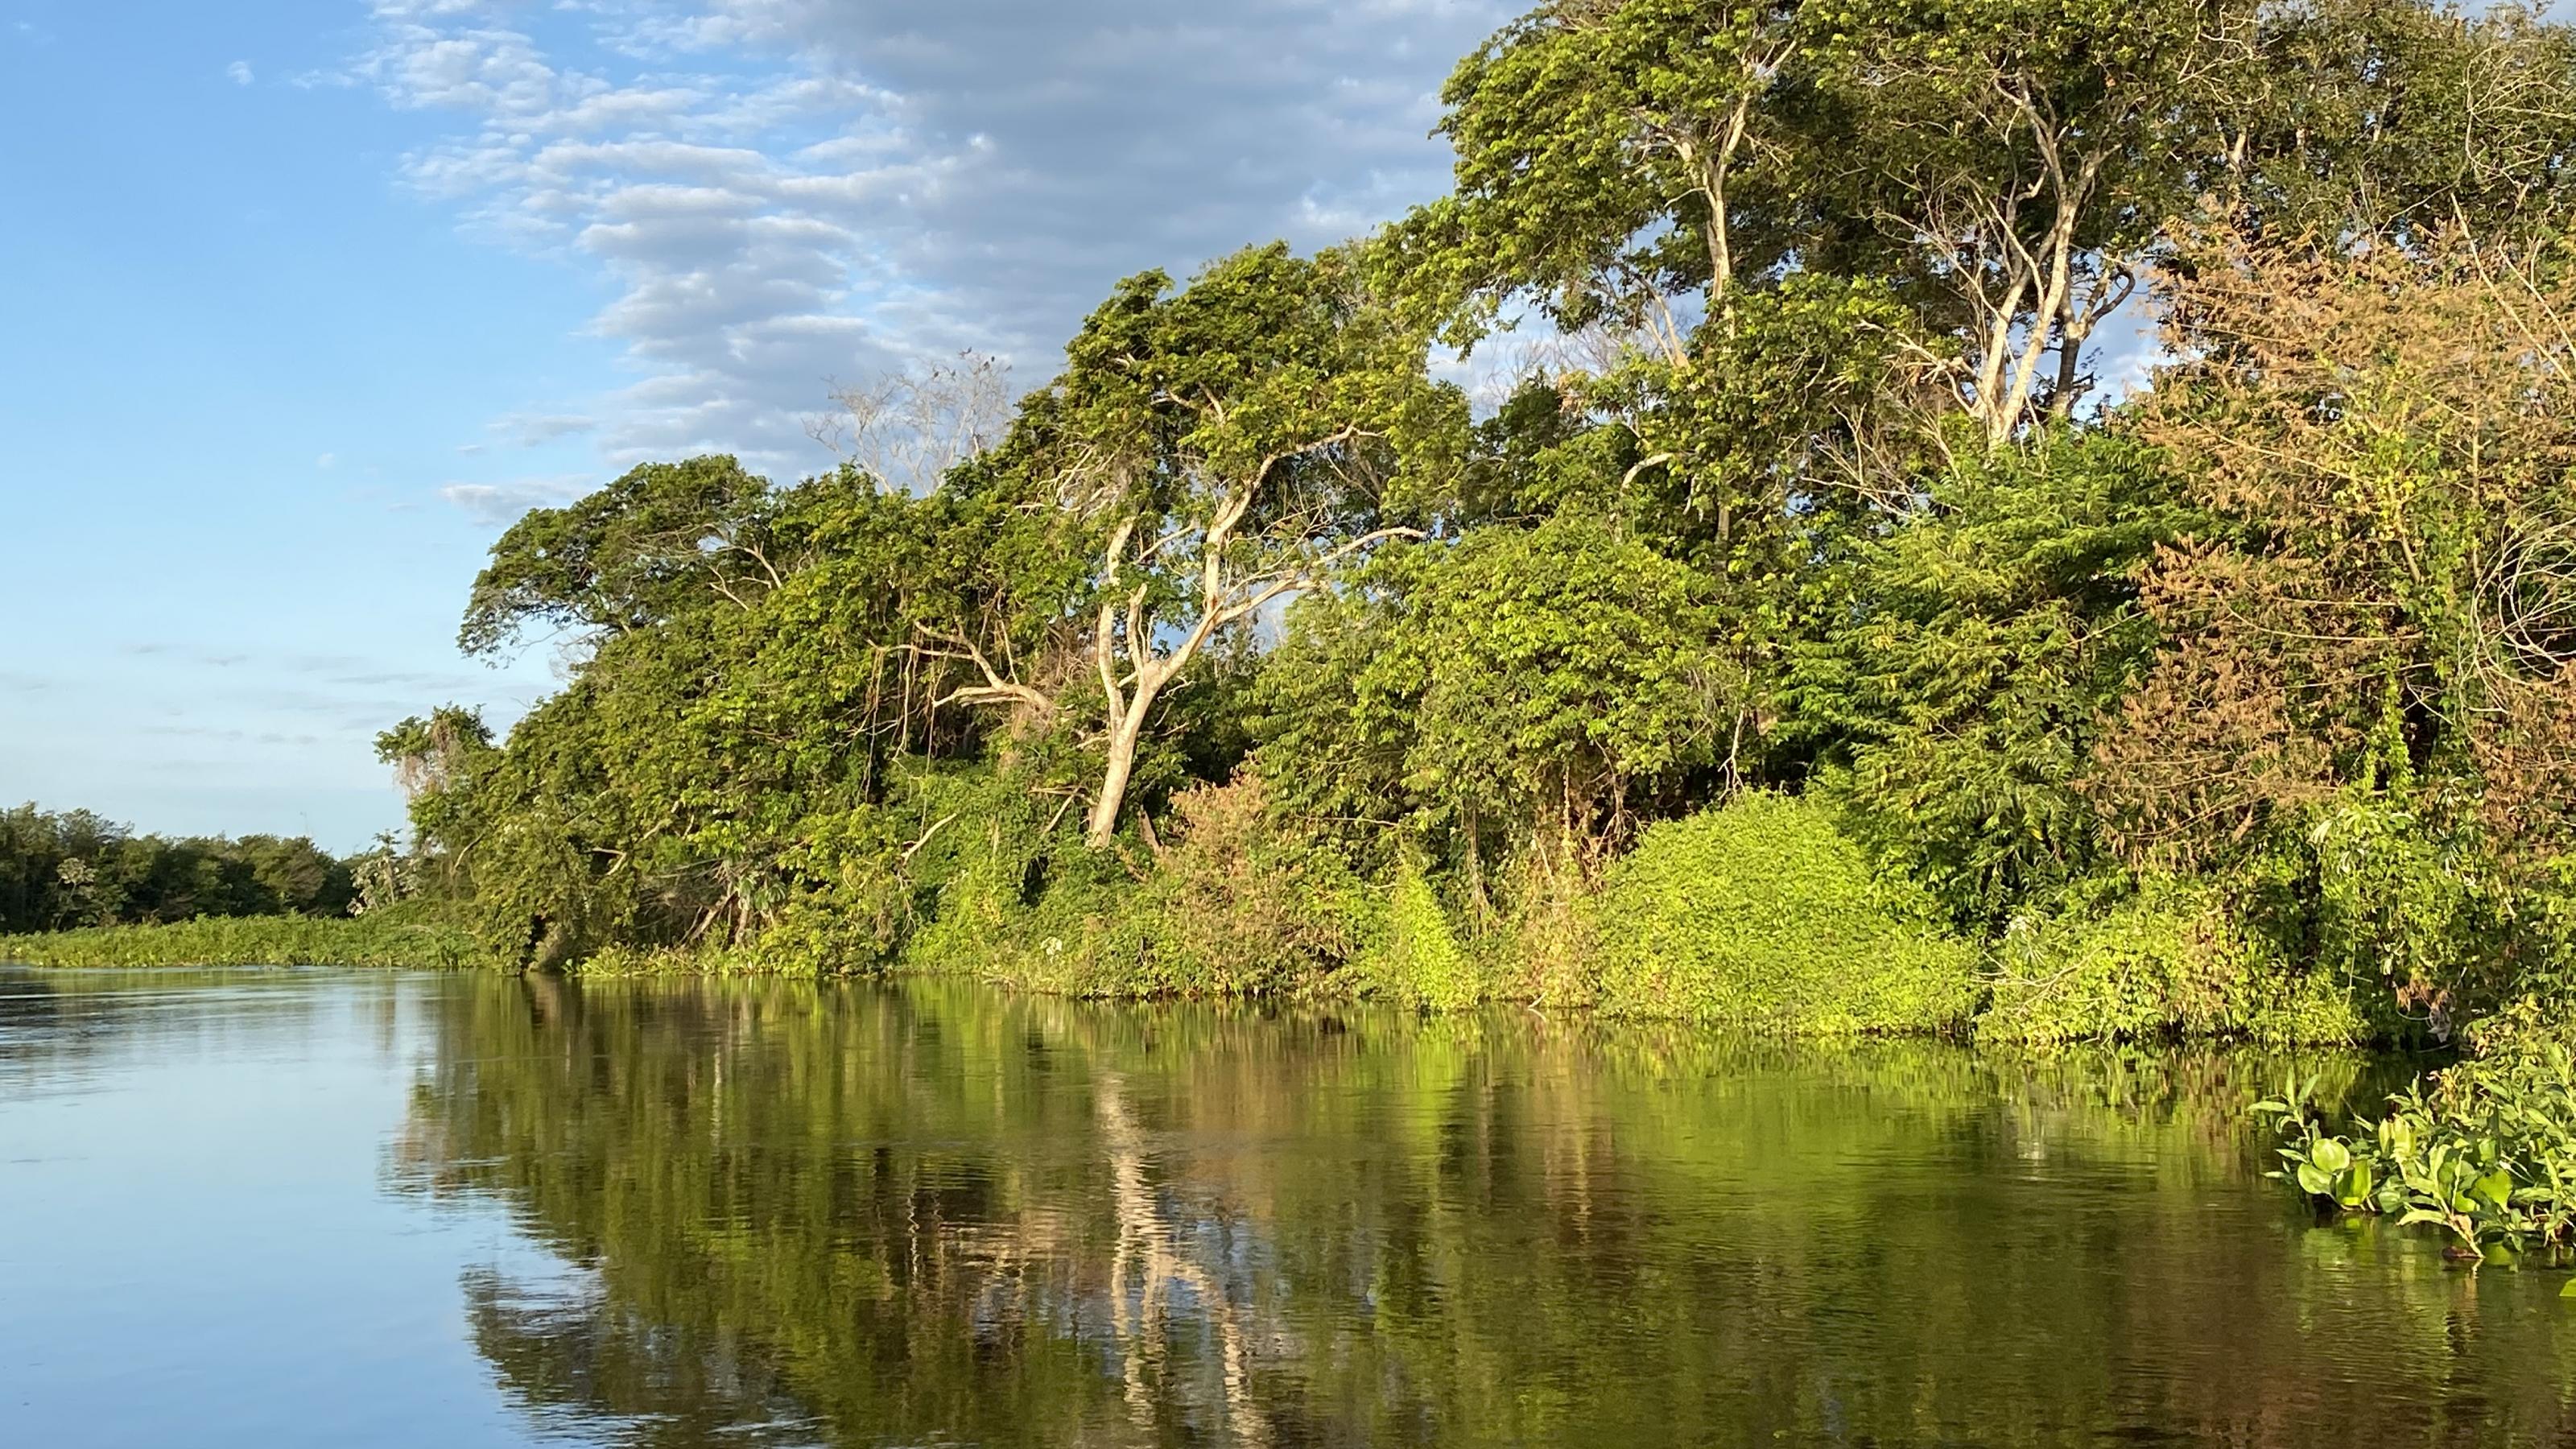 Abendstimmung im goldenen Licht am Ufer des Pantanal. Bäume spiegeln sich im stillen Wasser.